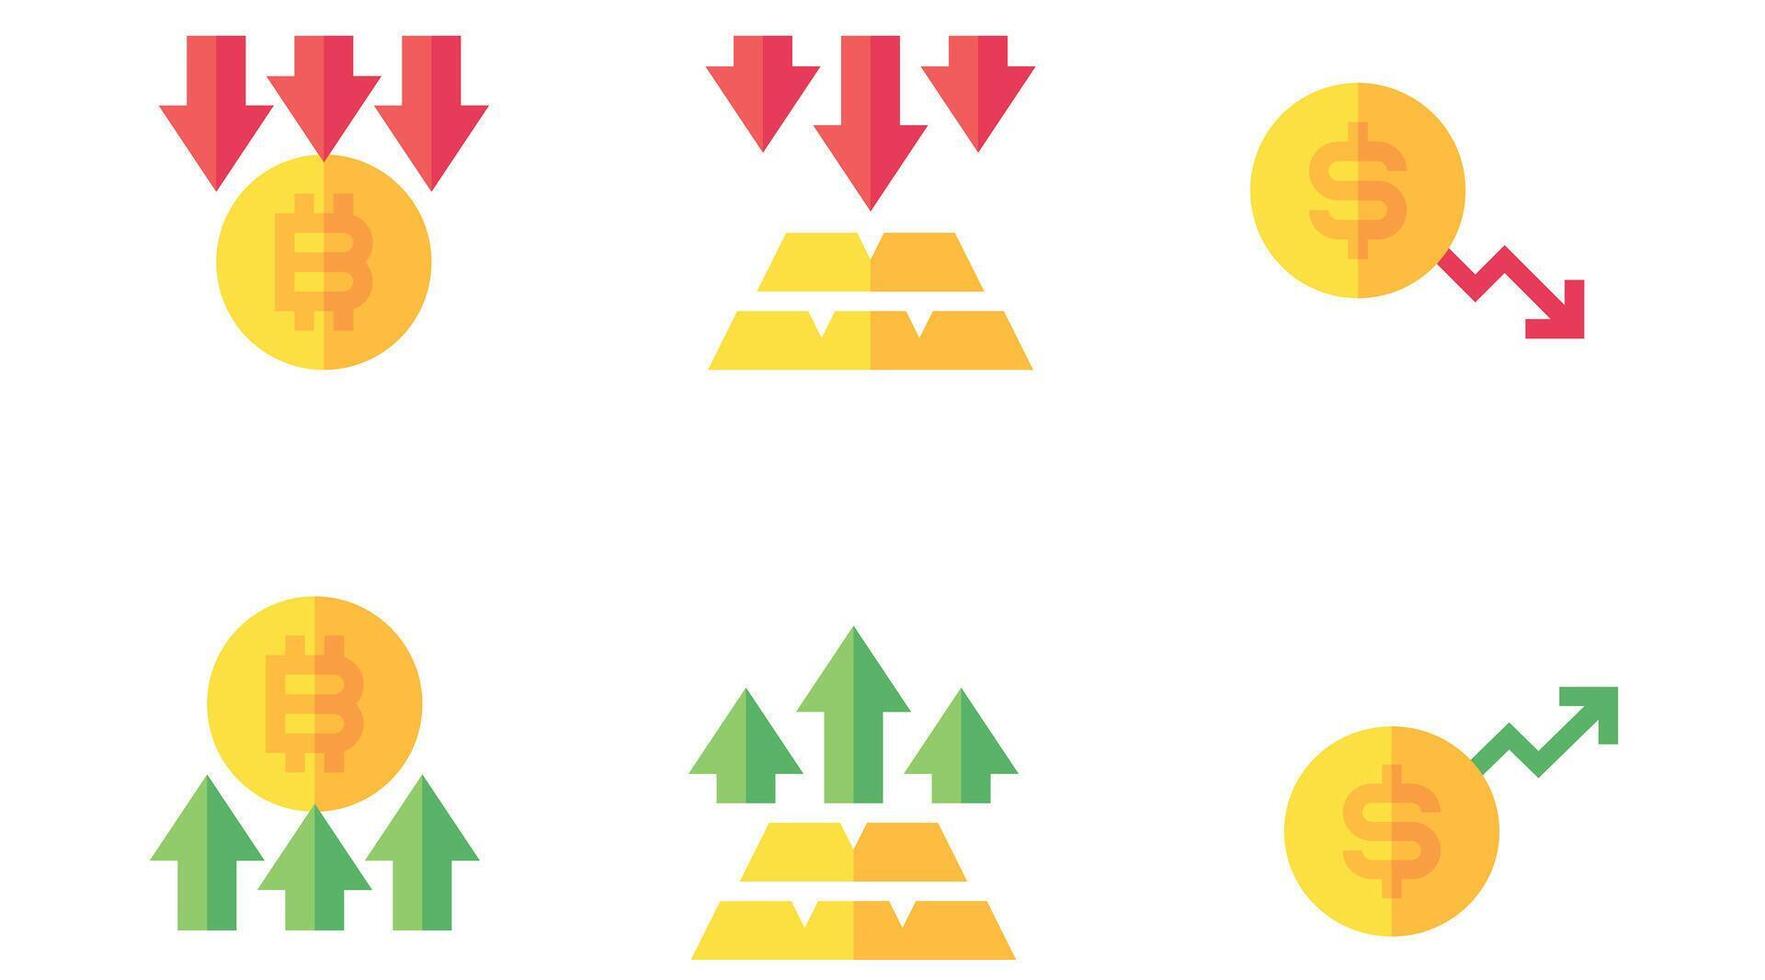 valuta och mynt vektor ikoner uppsättning för företag och finansiera